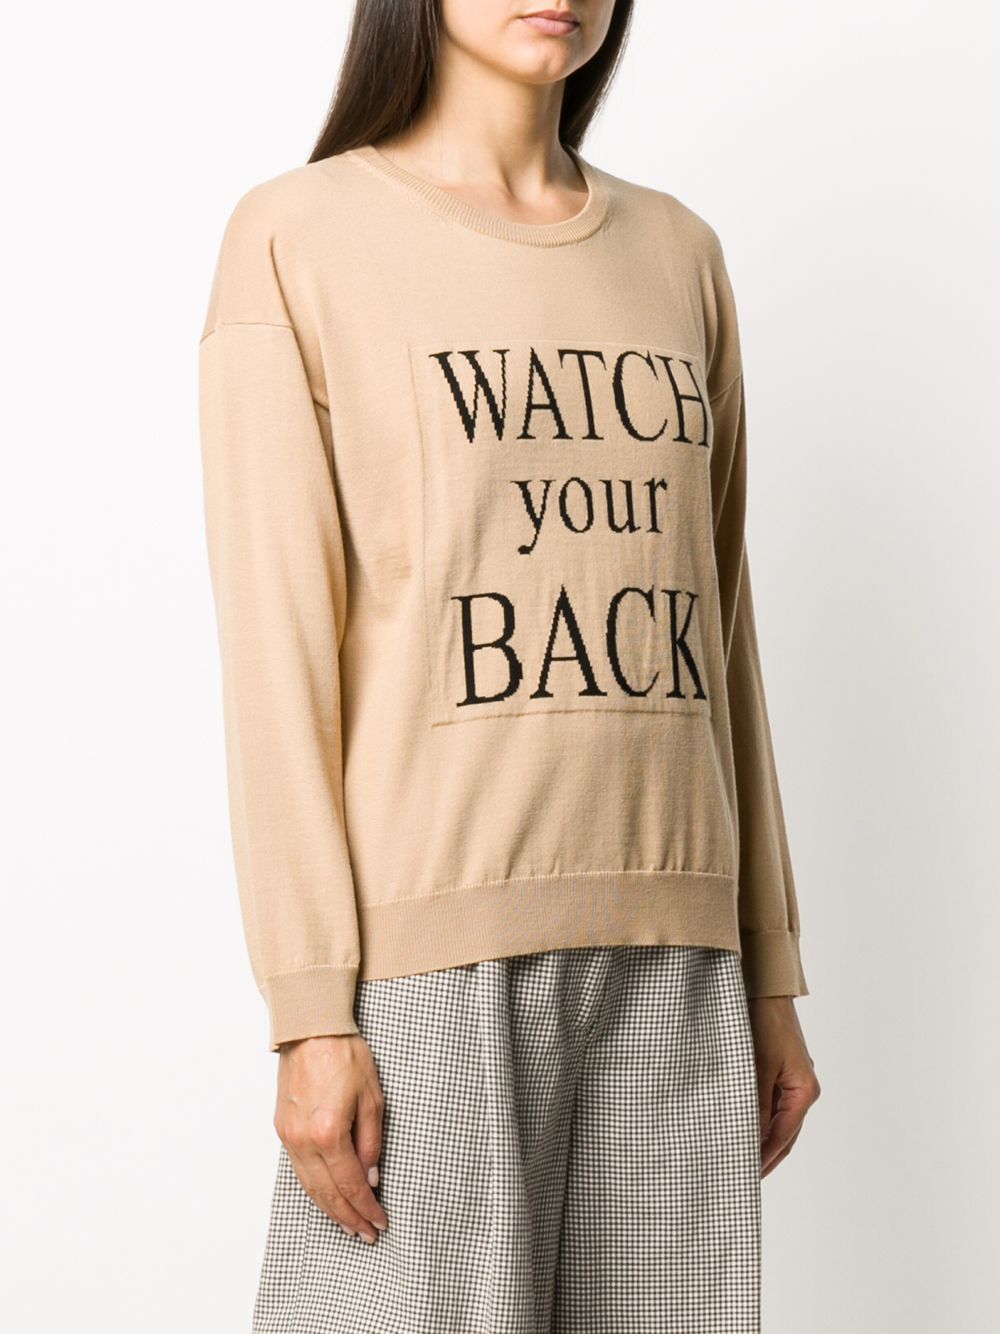 фото Boutique moschino джемпер с надписью watch your back